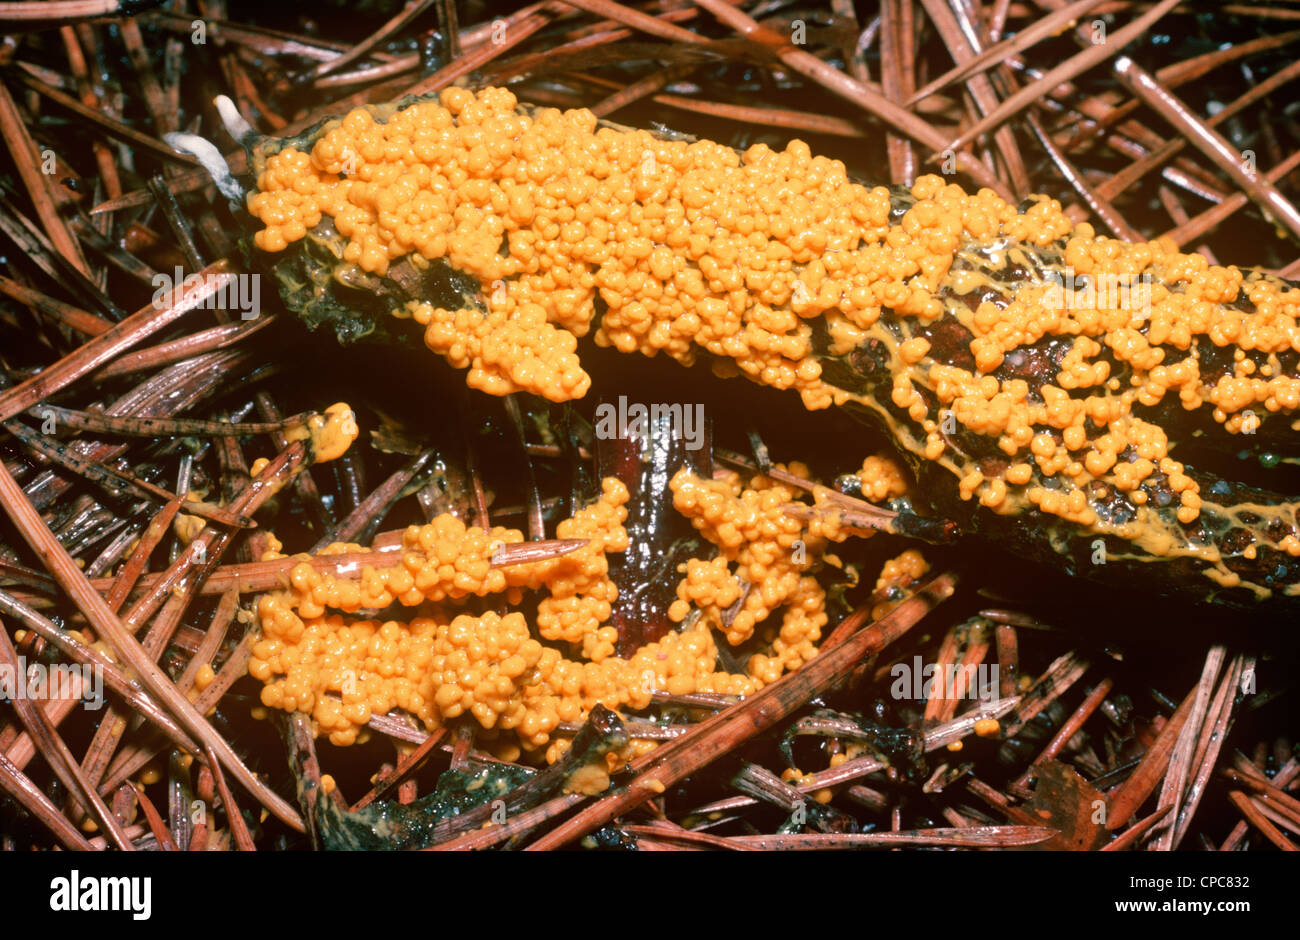 Slime mould (Leocarpus fragilis) plasmodium beginning to produce fruiting bodies, under pines UK Stock Photo